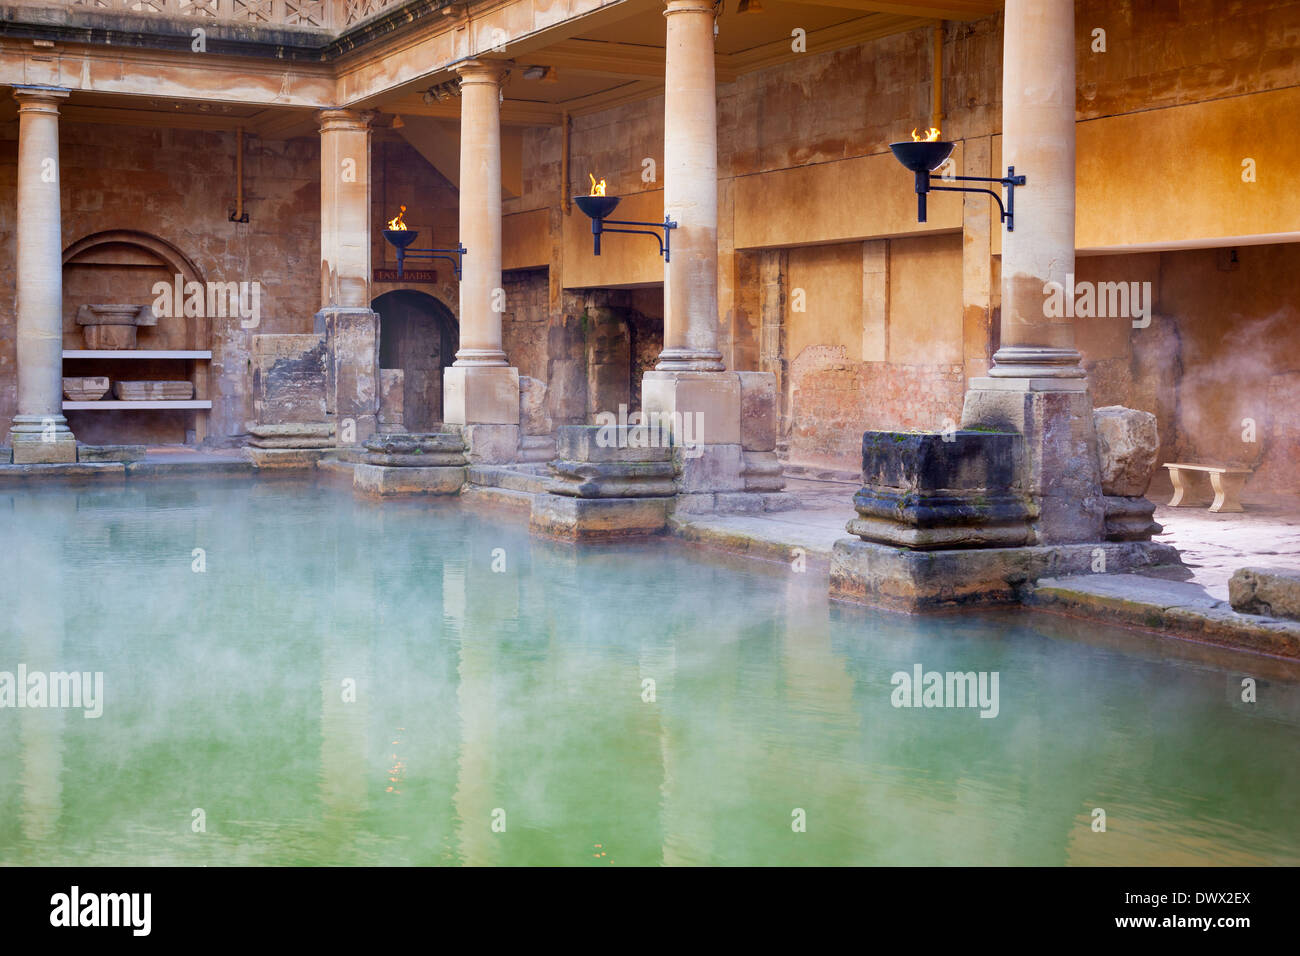 Dampf steigt aus dem heißen Mineral-Wasser in der großen Badewanne, Bestandteil der Roman Baths in Bath, Großbritannien Stockfoto